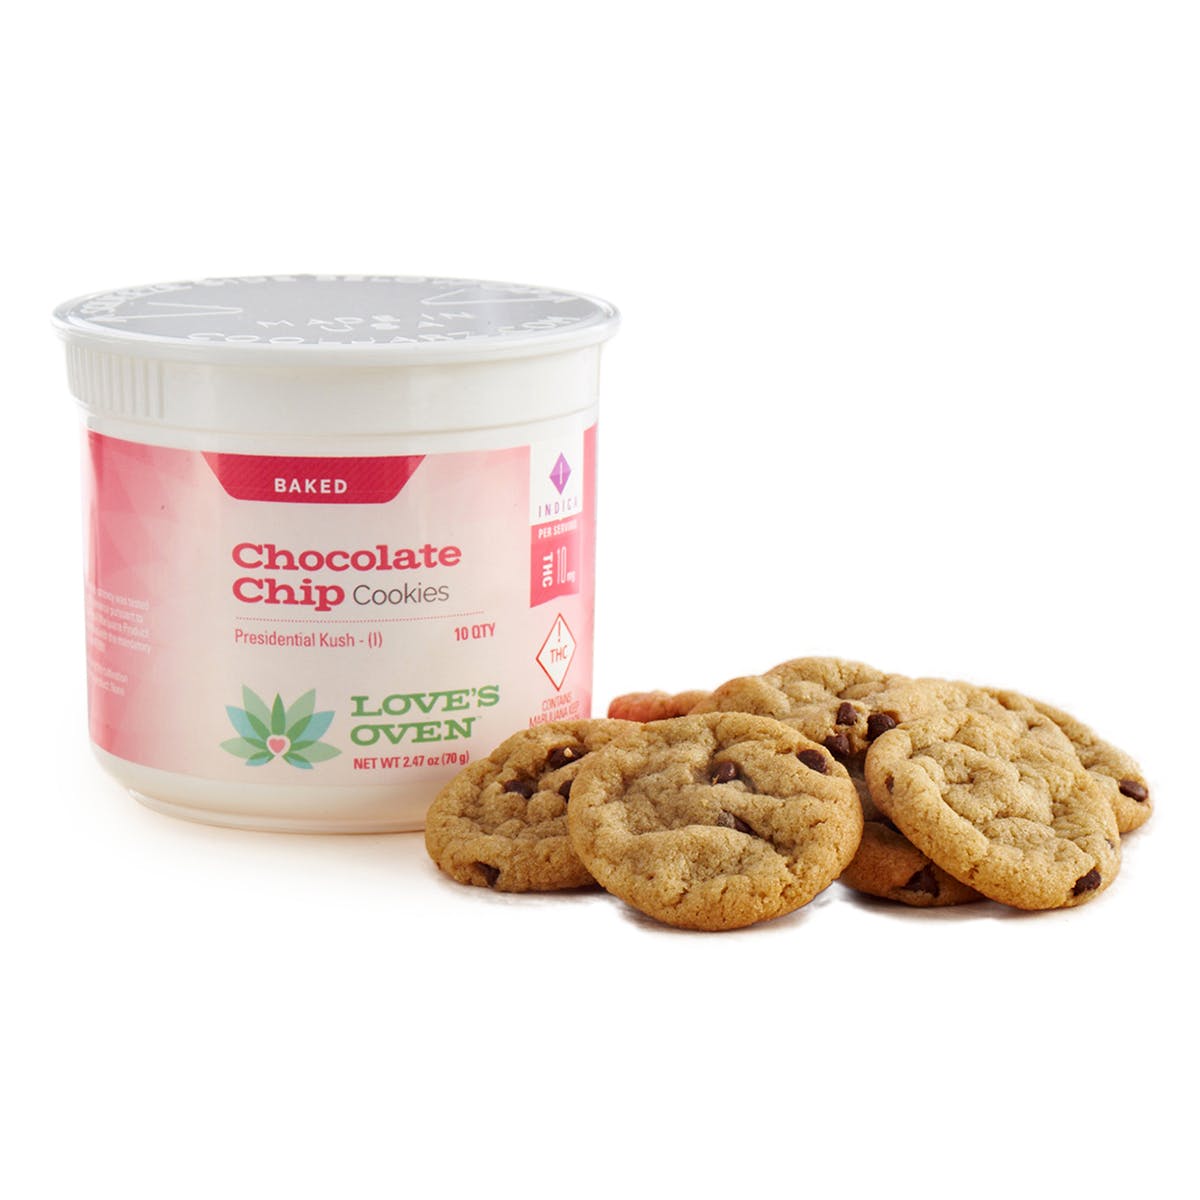 marijuana-dispensaries-redeye-releaf-in-denver-recreational-chocolate-chip-cookies-2c-100mg